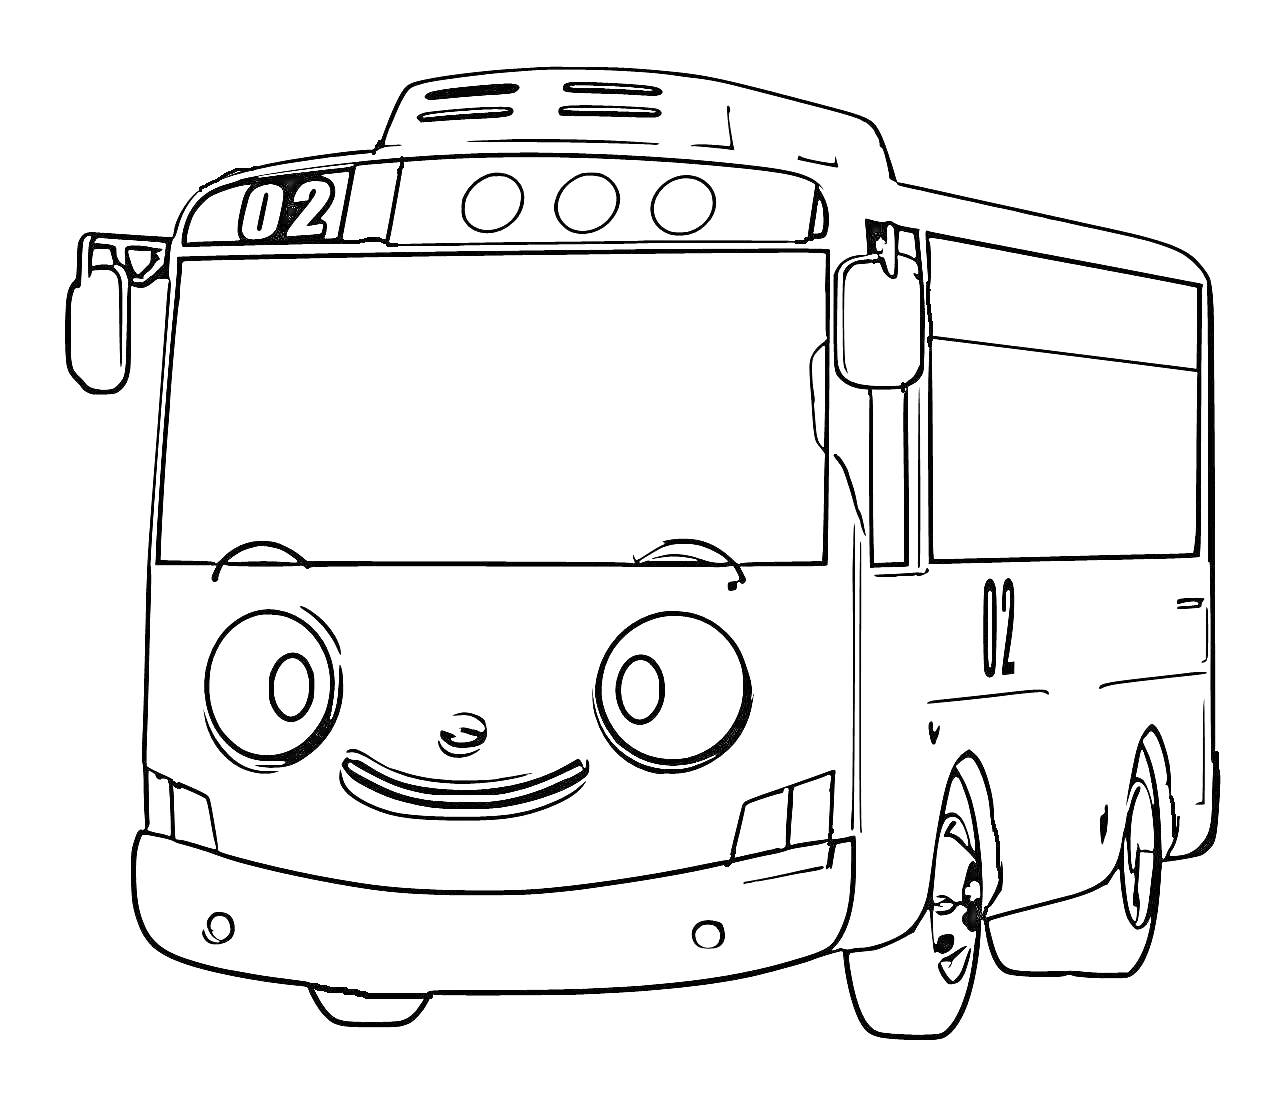 Раскраска Маленький автобус с номером 021 с лицом Тайо